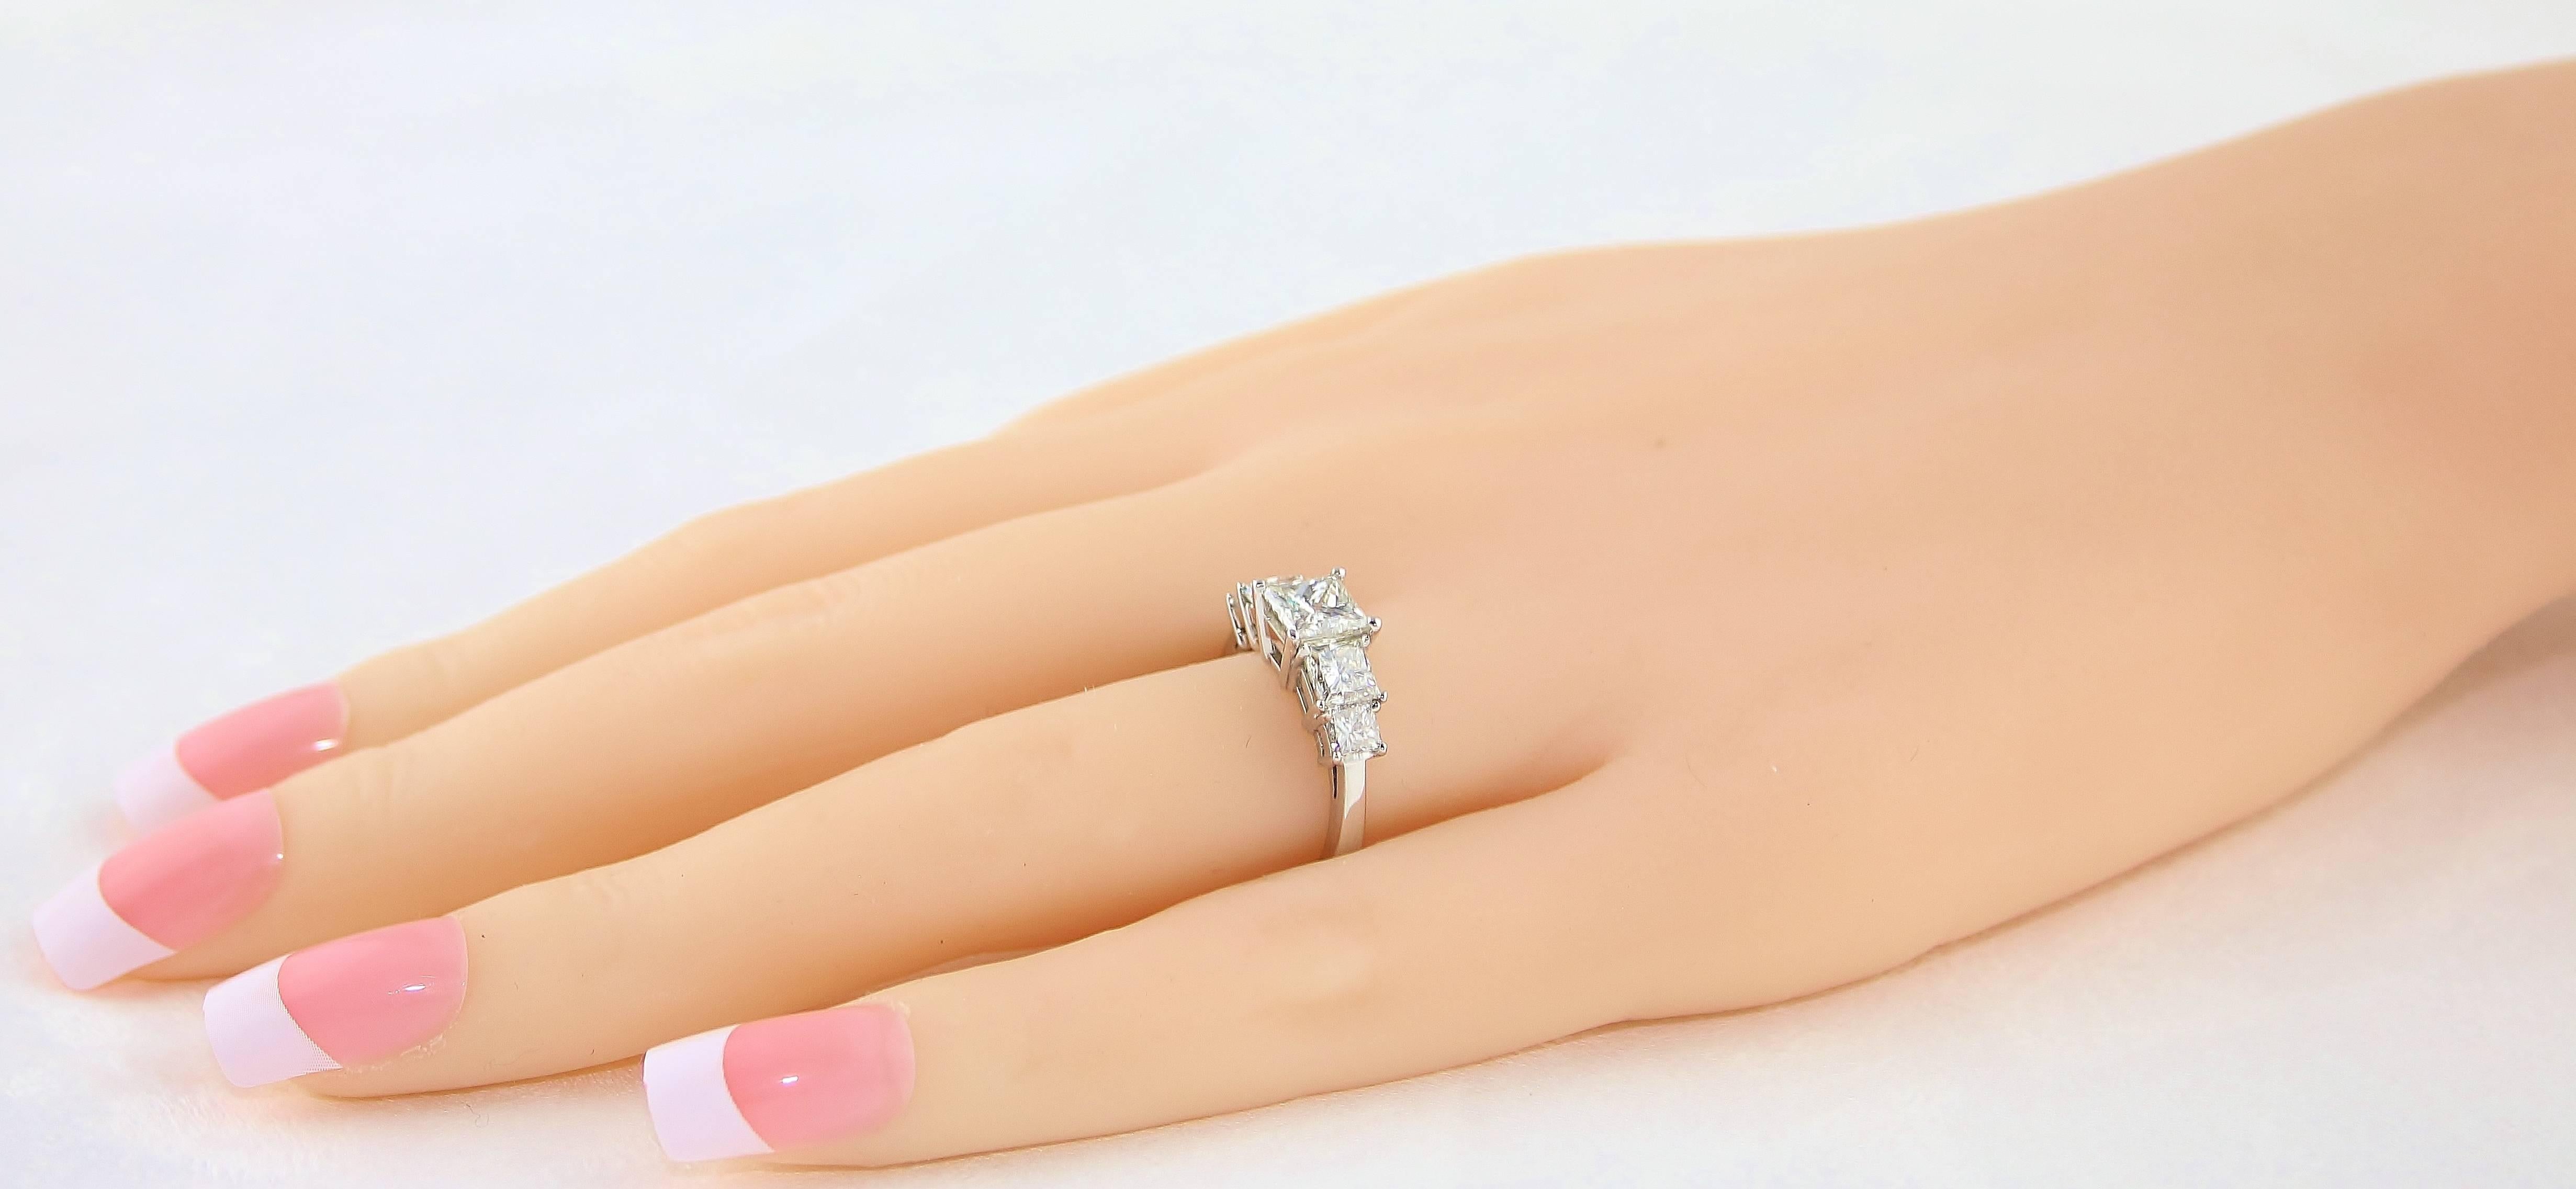 5 stone diamond ring princess cut